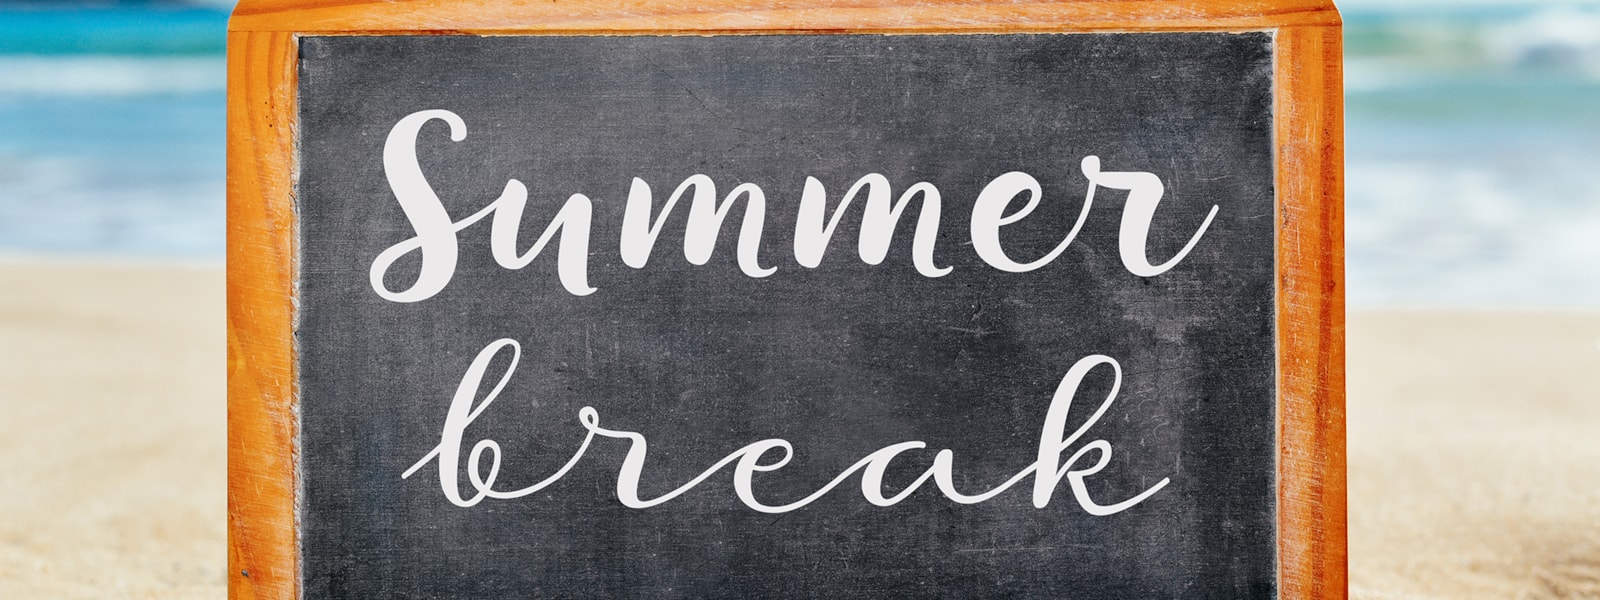 Summer Break written on a chalkboard